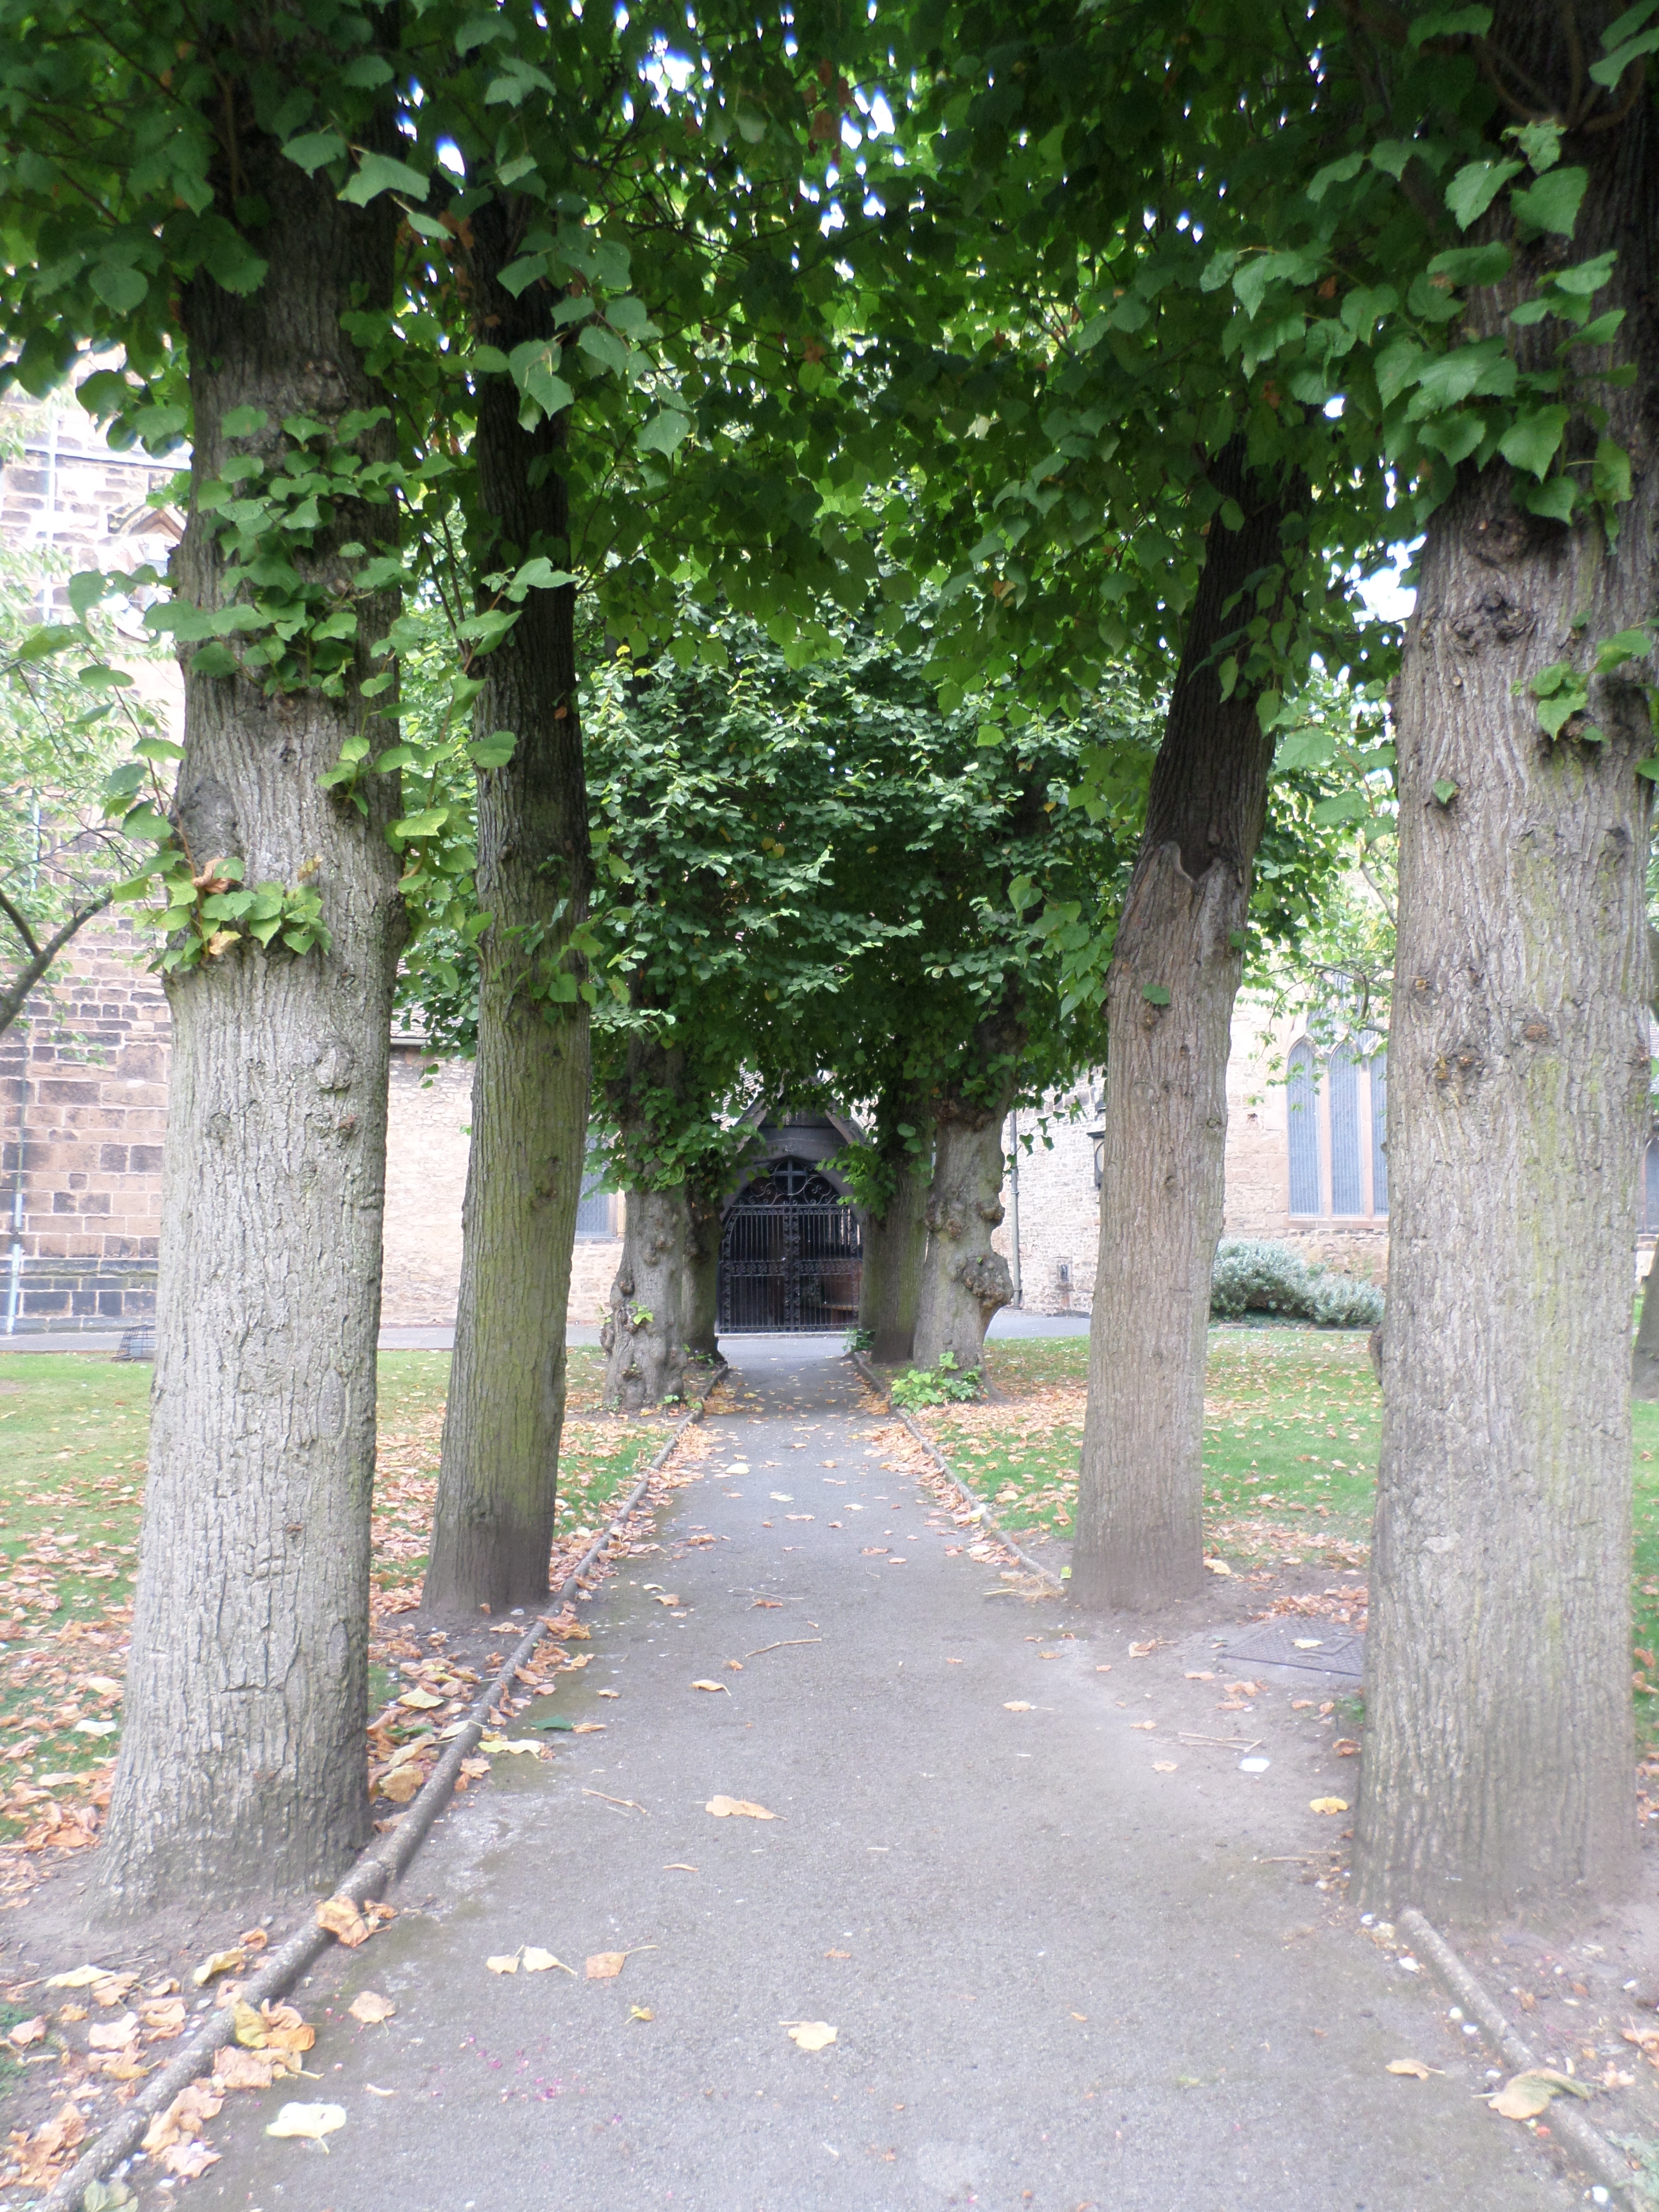 Churchyard, Church, Leaves, Path, Trees, HQ Photo